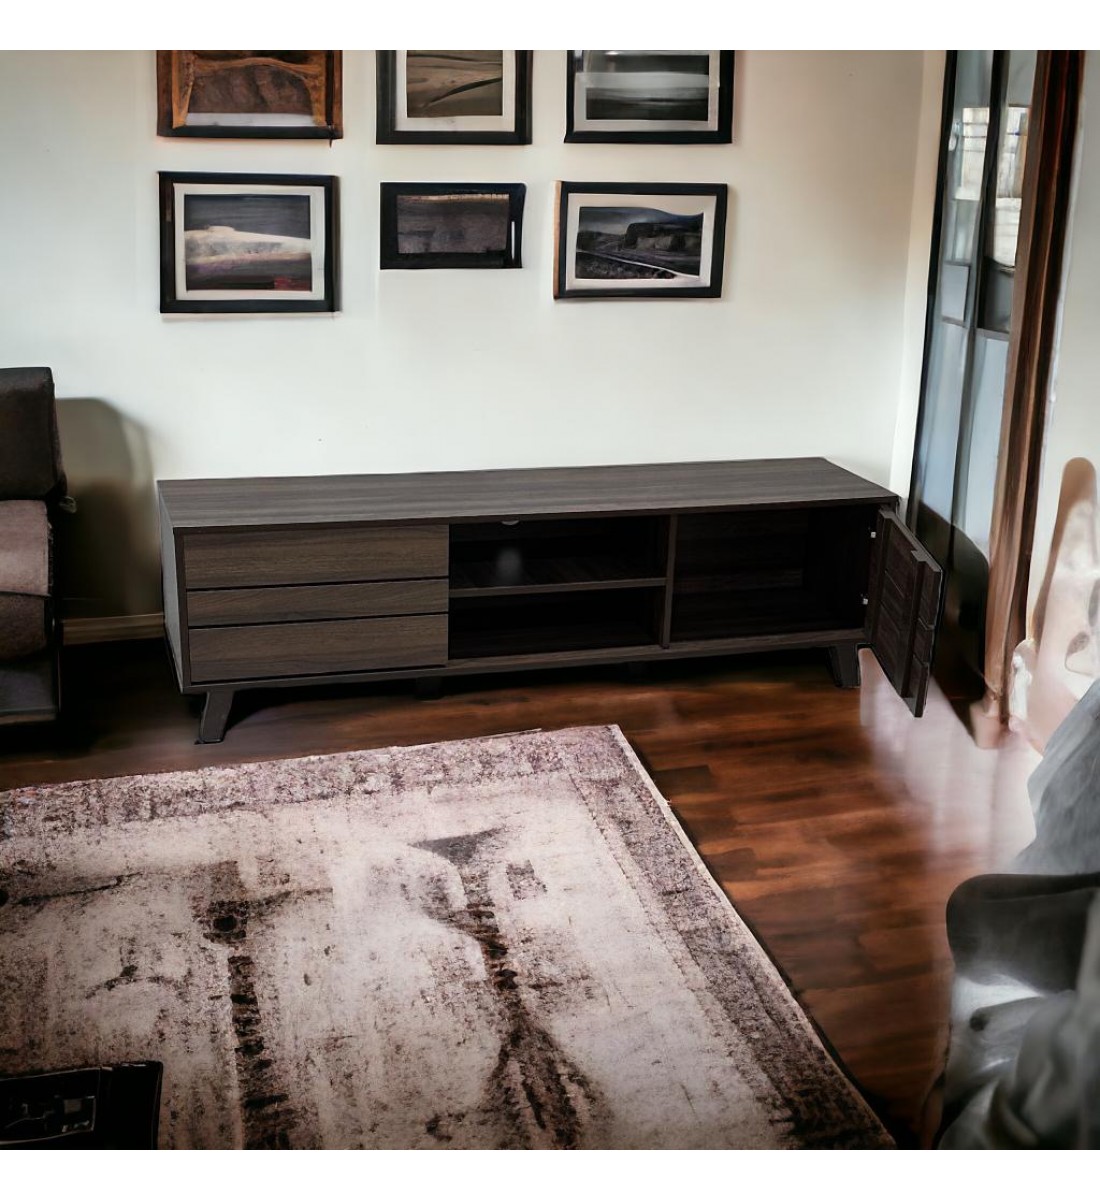  طاولة شاشة بلازما خشب ديكور تصميم انيق وعصري بني محروق 160×40×47سم